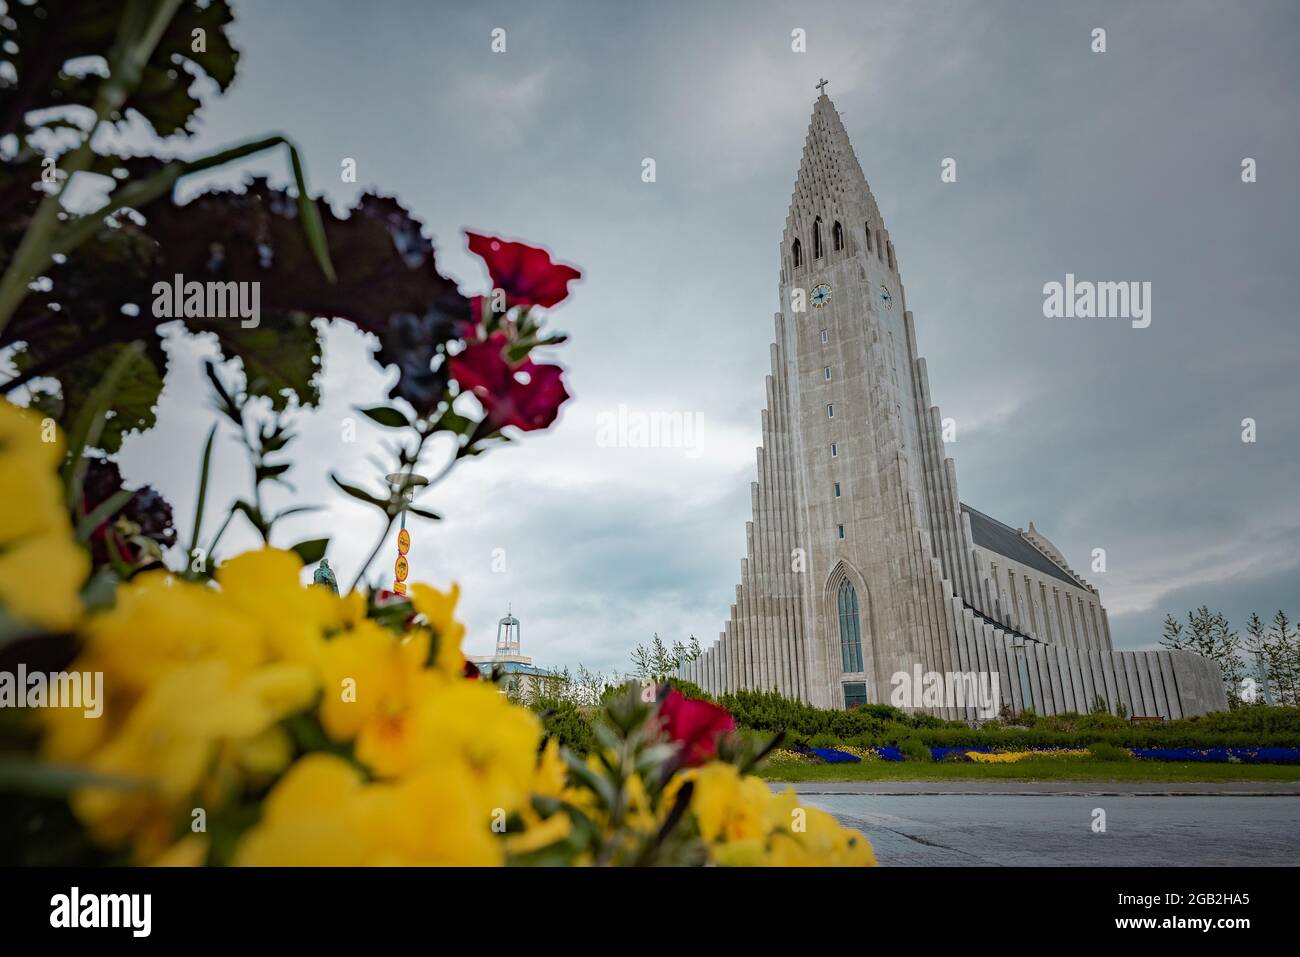 Hallgrimskirkja, una chiesa luterana nel mezzo di Reykjavik, capitale dell'Islanda, vista di fronte in una giornata estiva nuvolosa. Foto Stock